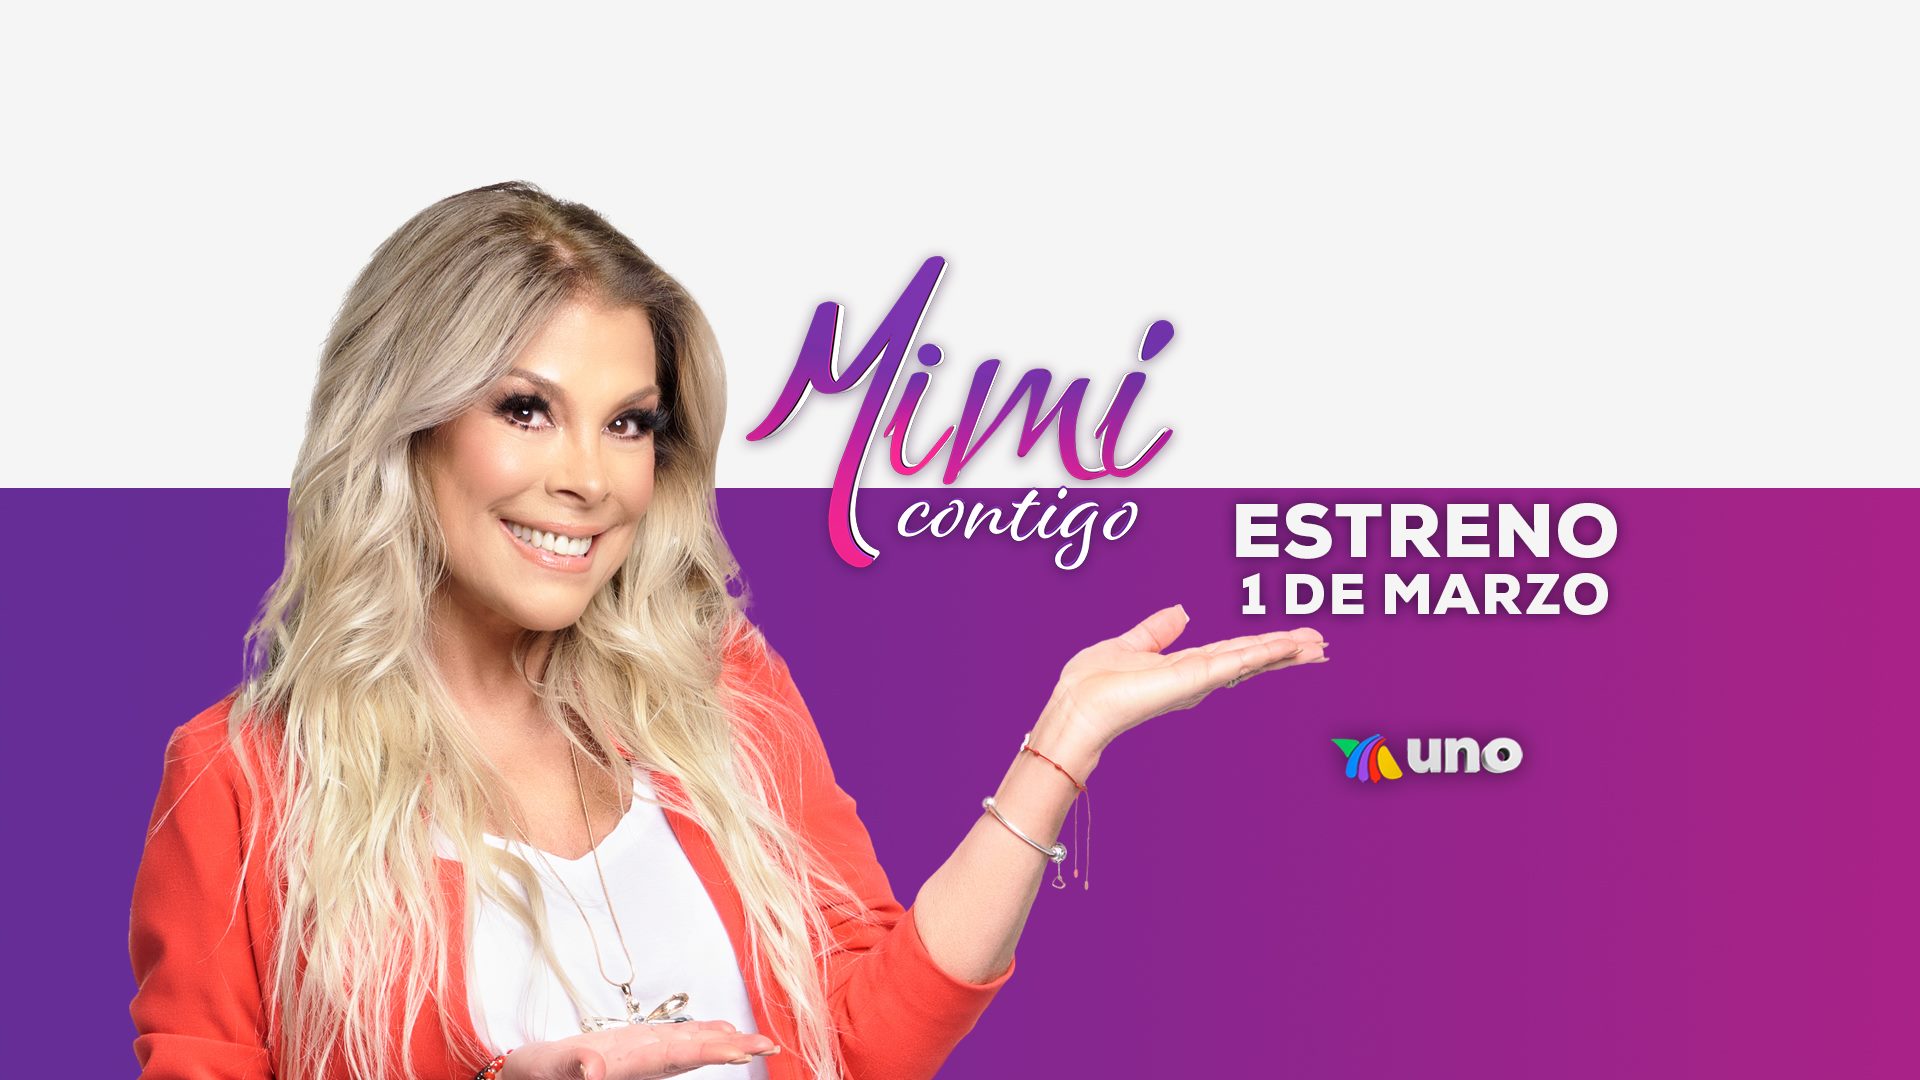 Este lunes 1 de marzo es el estreno del programa “Mimí Contigo” por Azteca Uno a las 16:30 horas